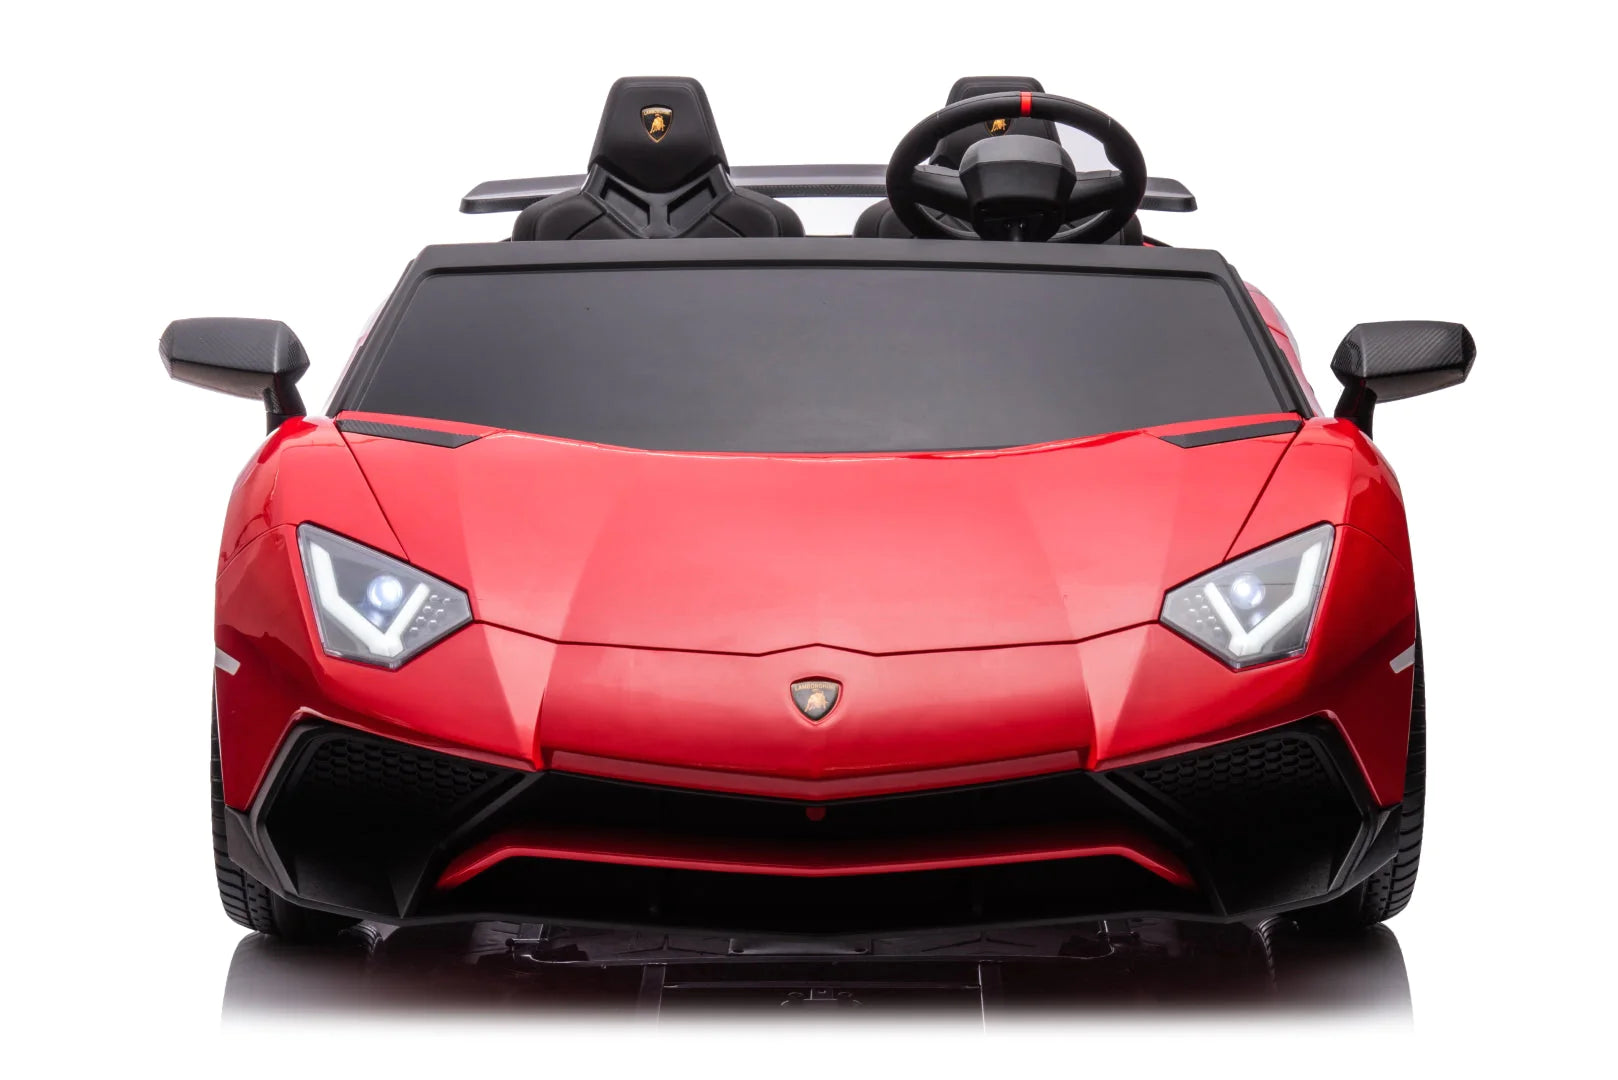 2023 Lamborghini Aventador Car | 2 Seater > 24V (2x2) | Electric Riding Vehicle for Kids